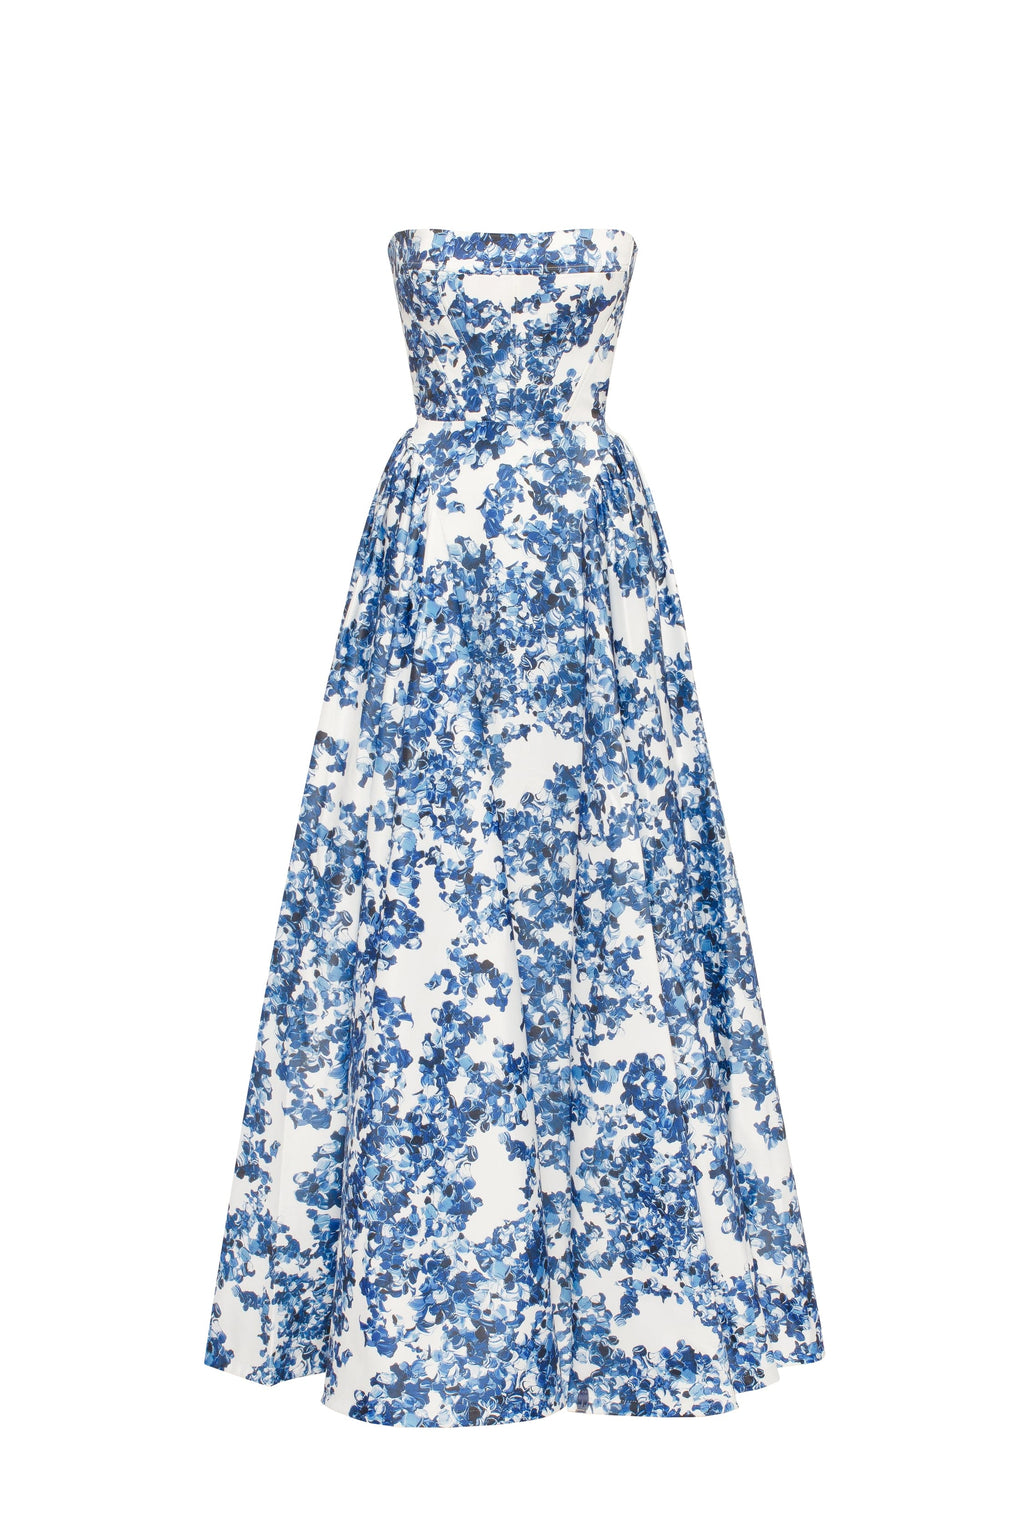 Blue satin v neck lace long prom dress, blue evening dress – dresstby